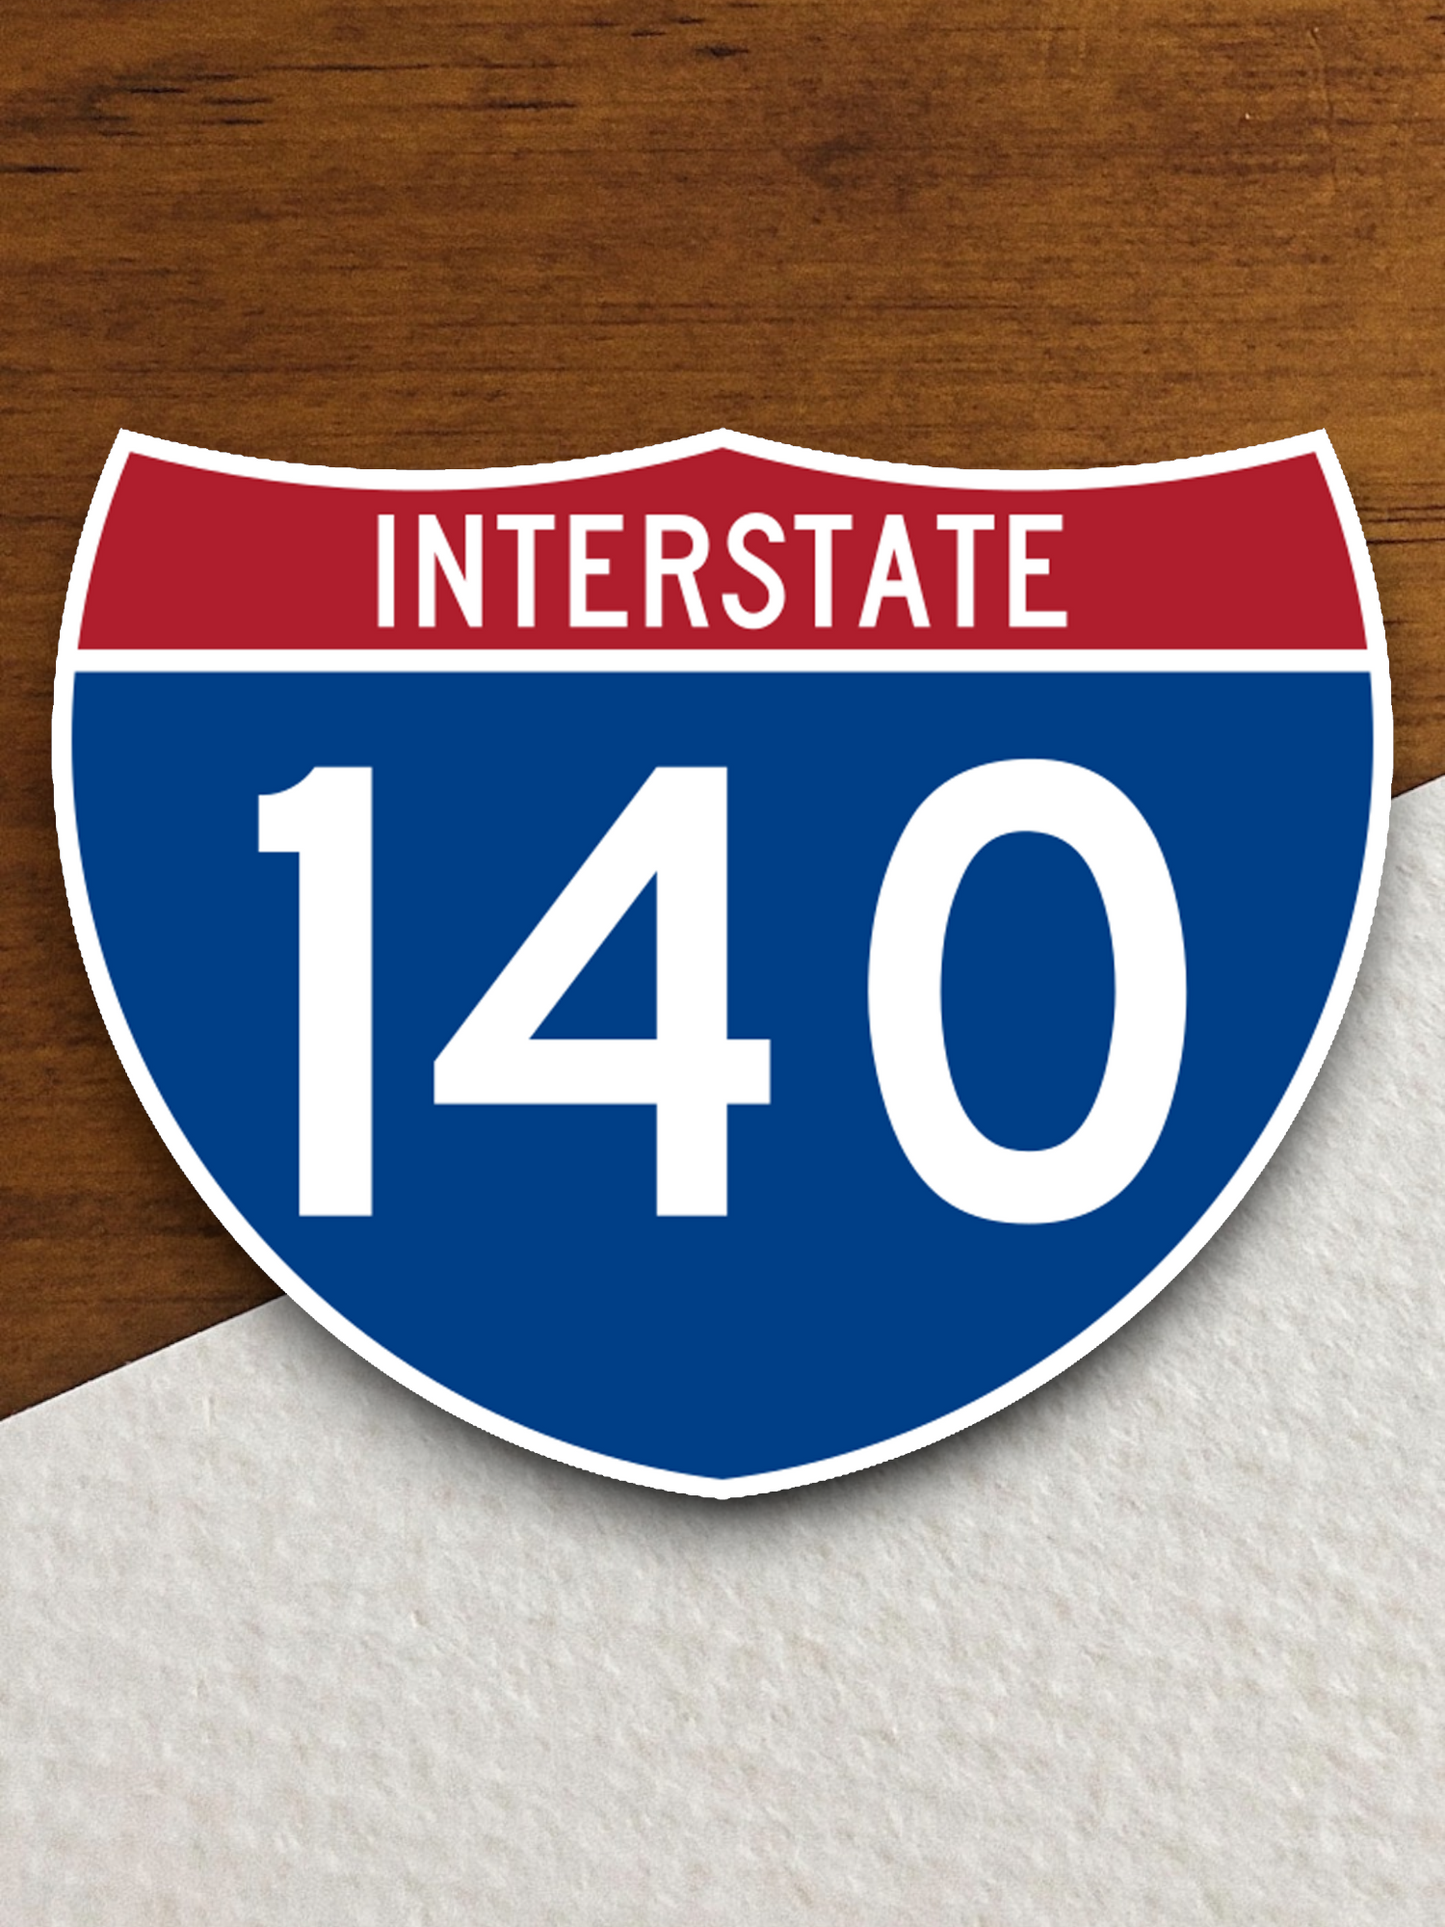 Interstate I-140 Sticker